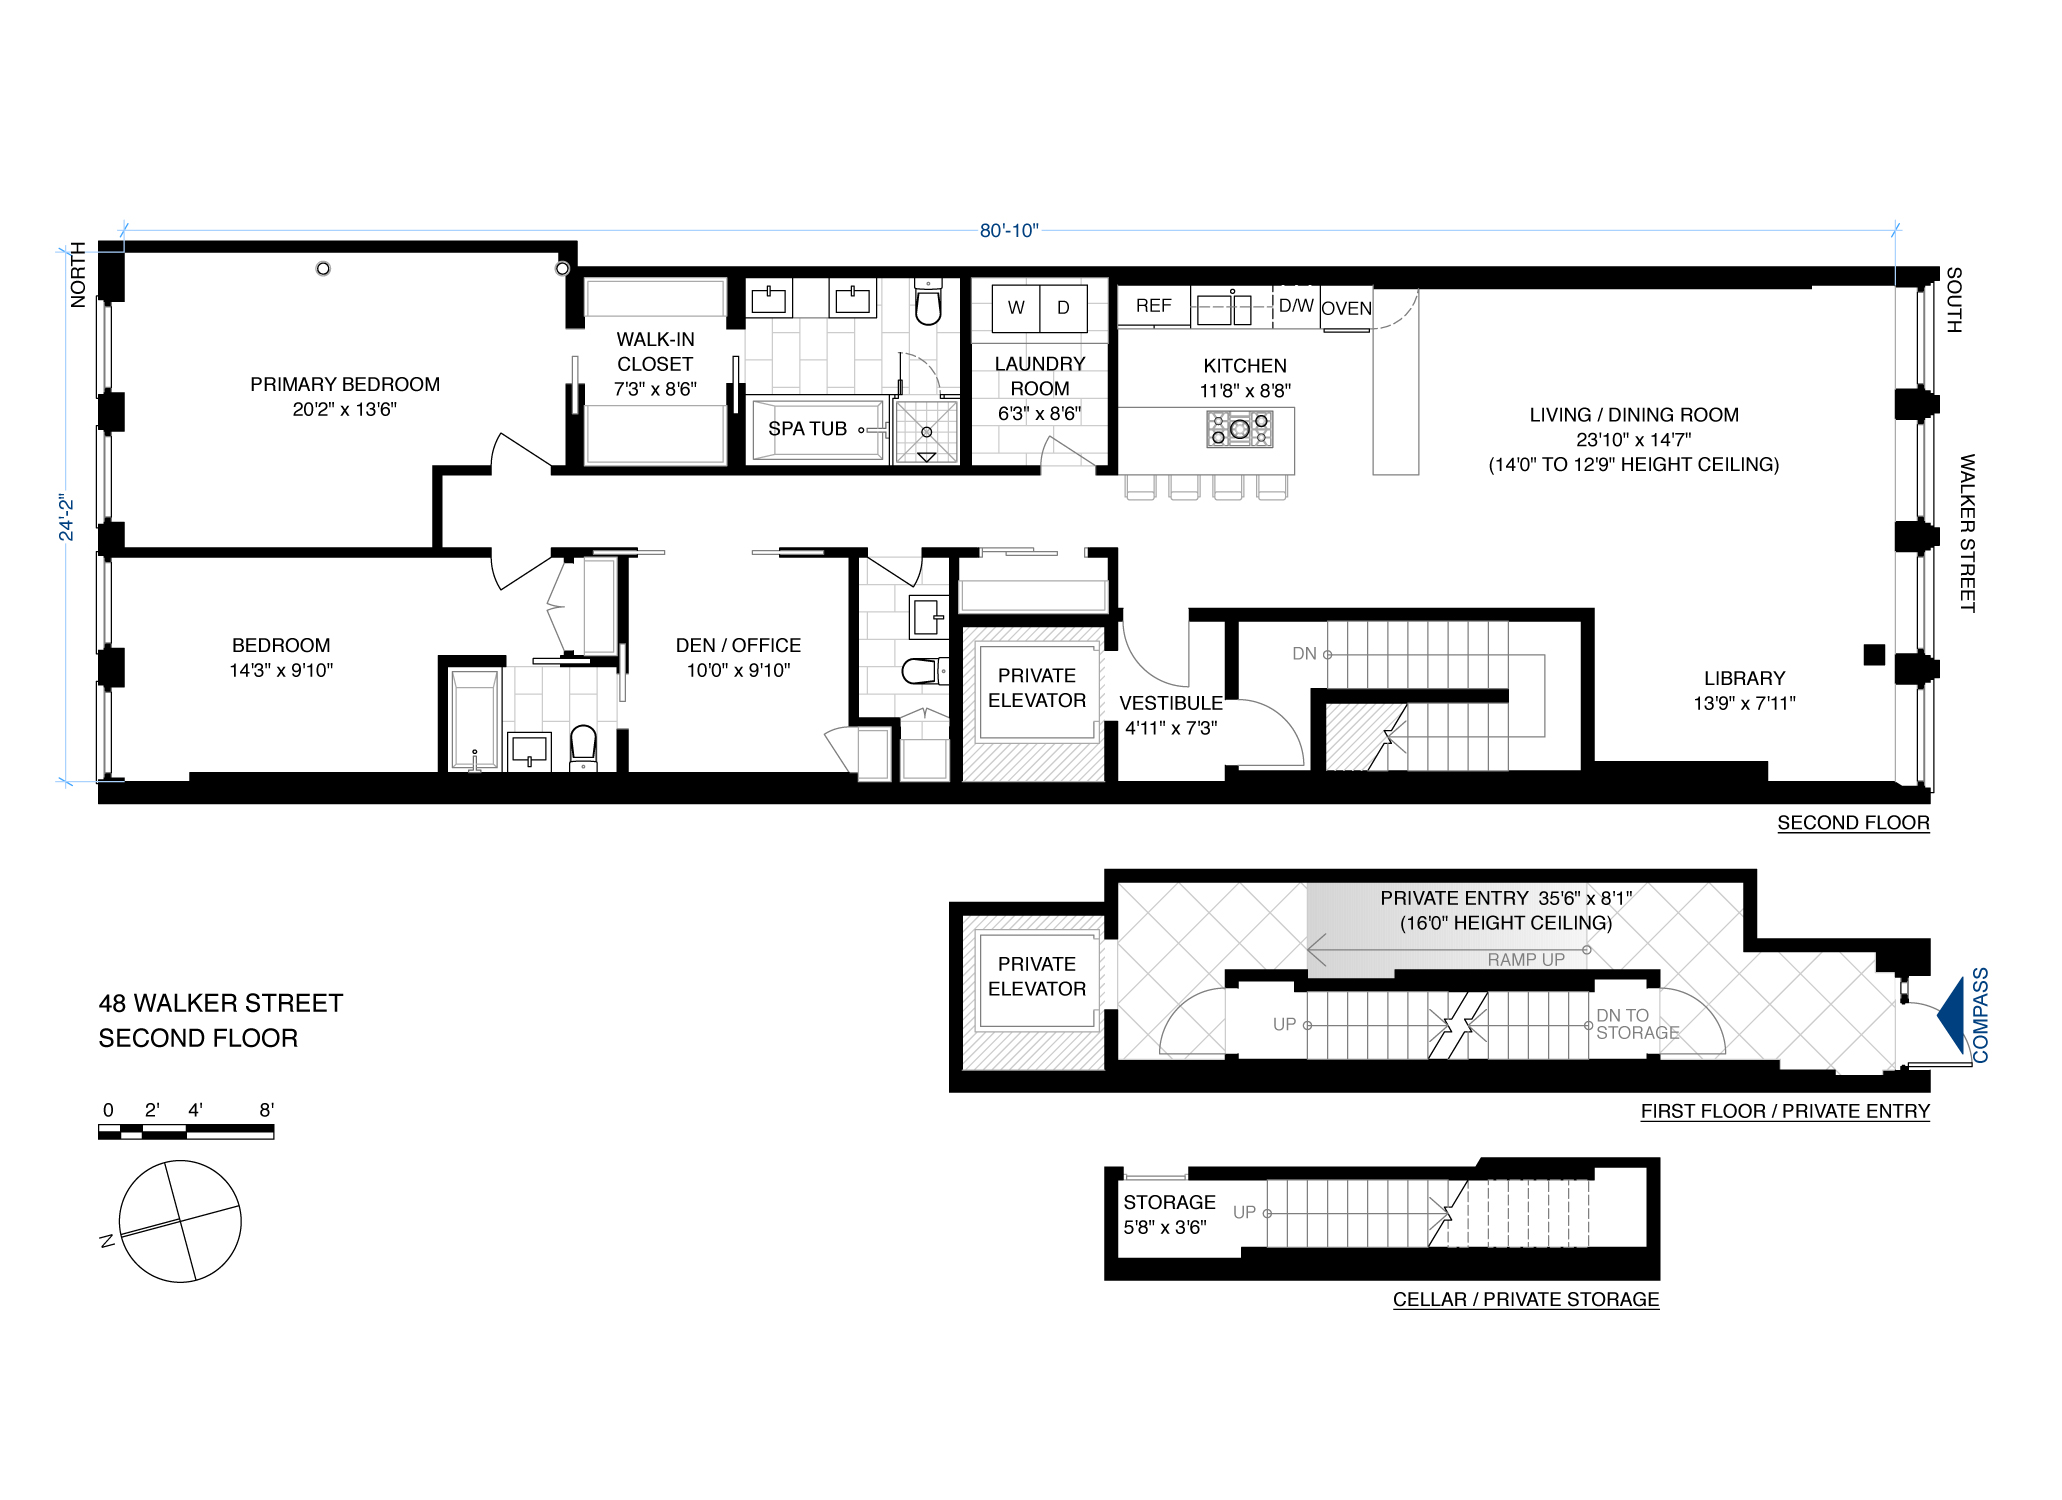 Floorplan for 48 Walker Street, 2